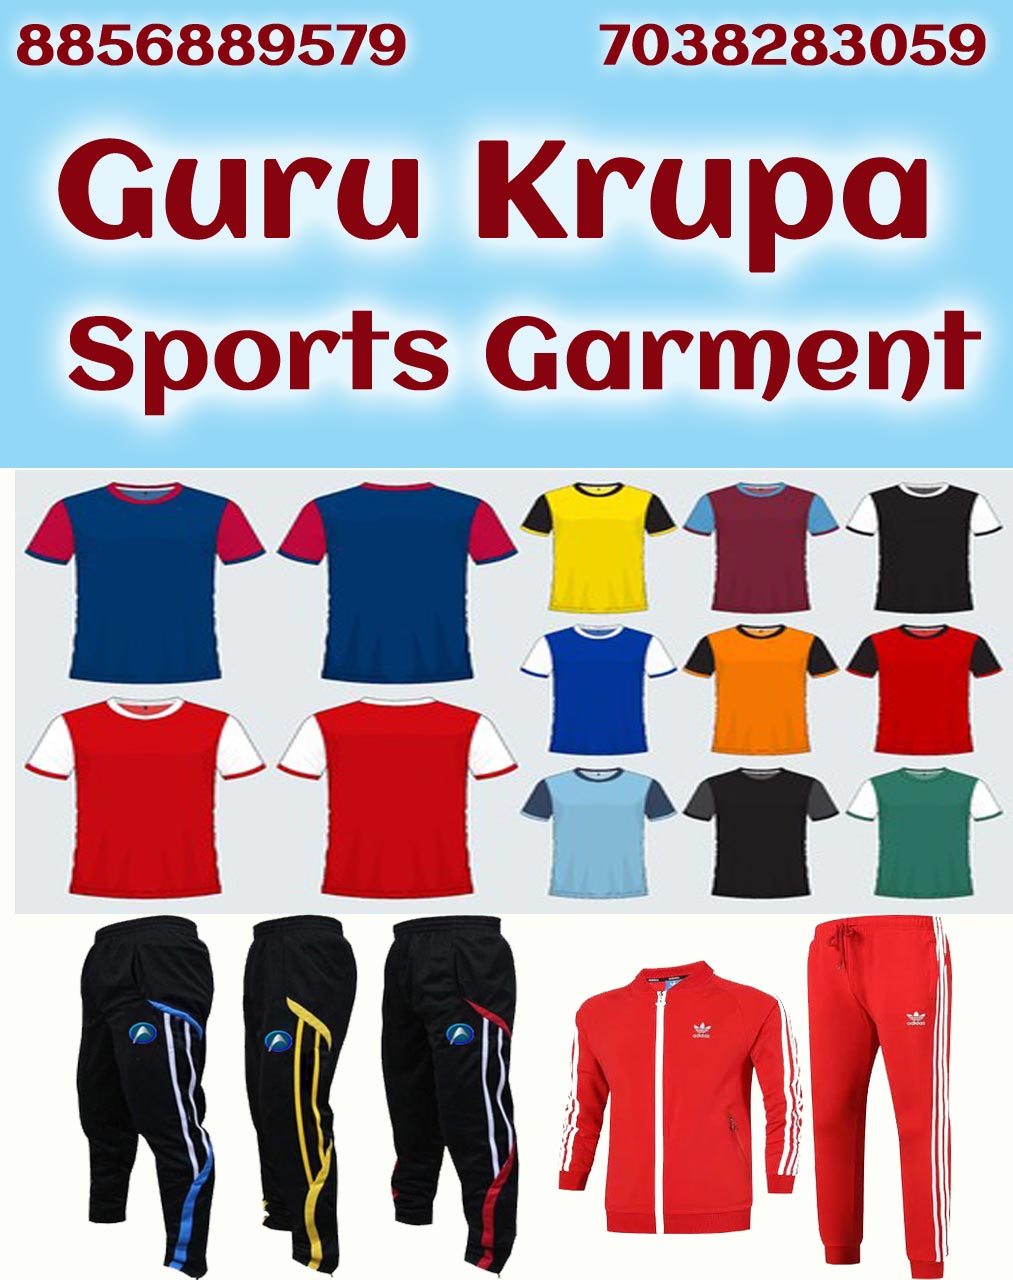 Guru Krupa Sports Garment | SolapurMall.com